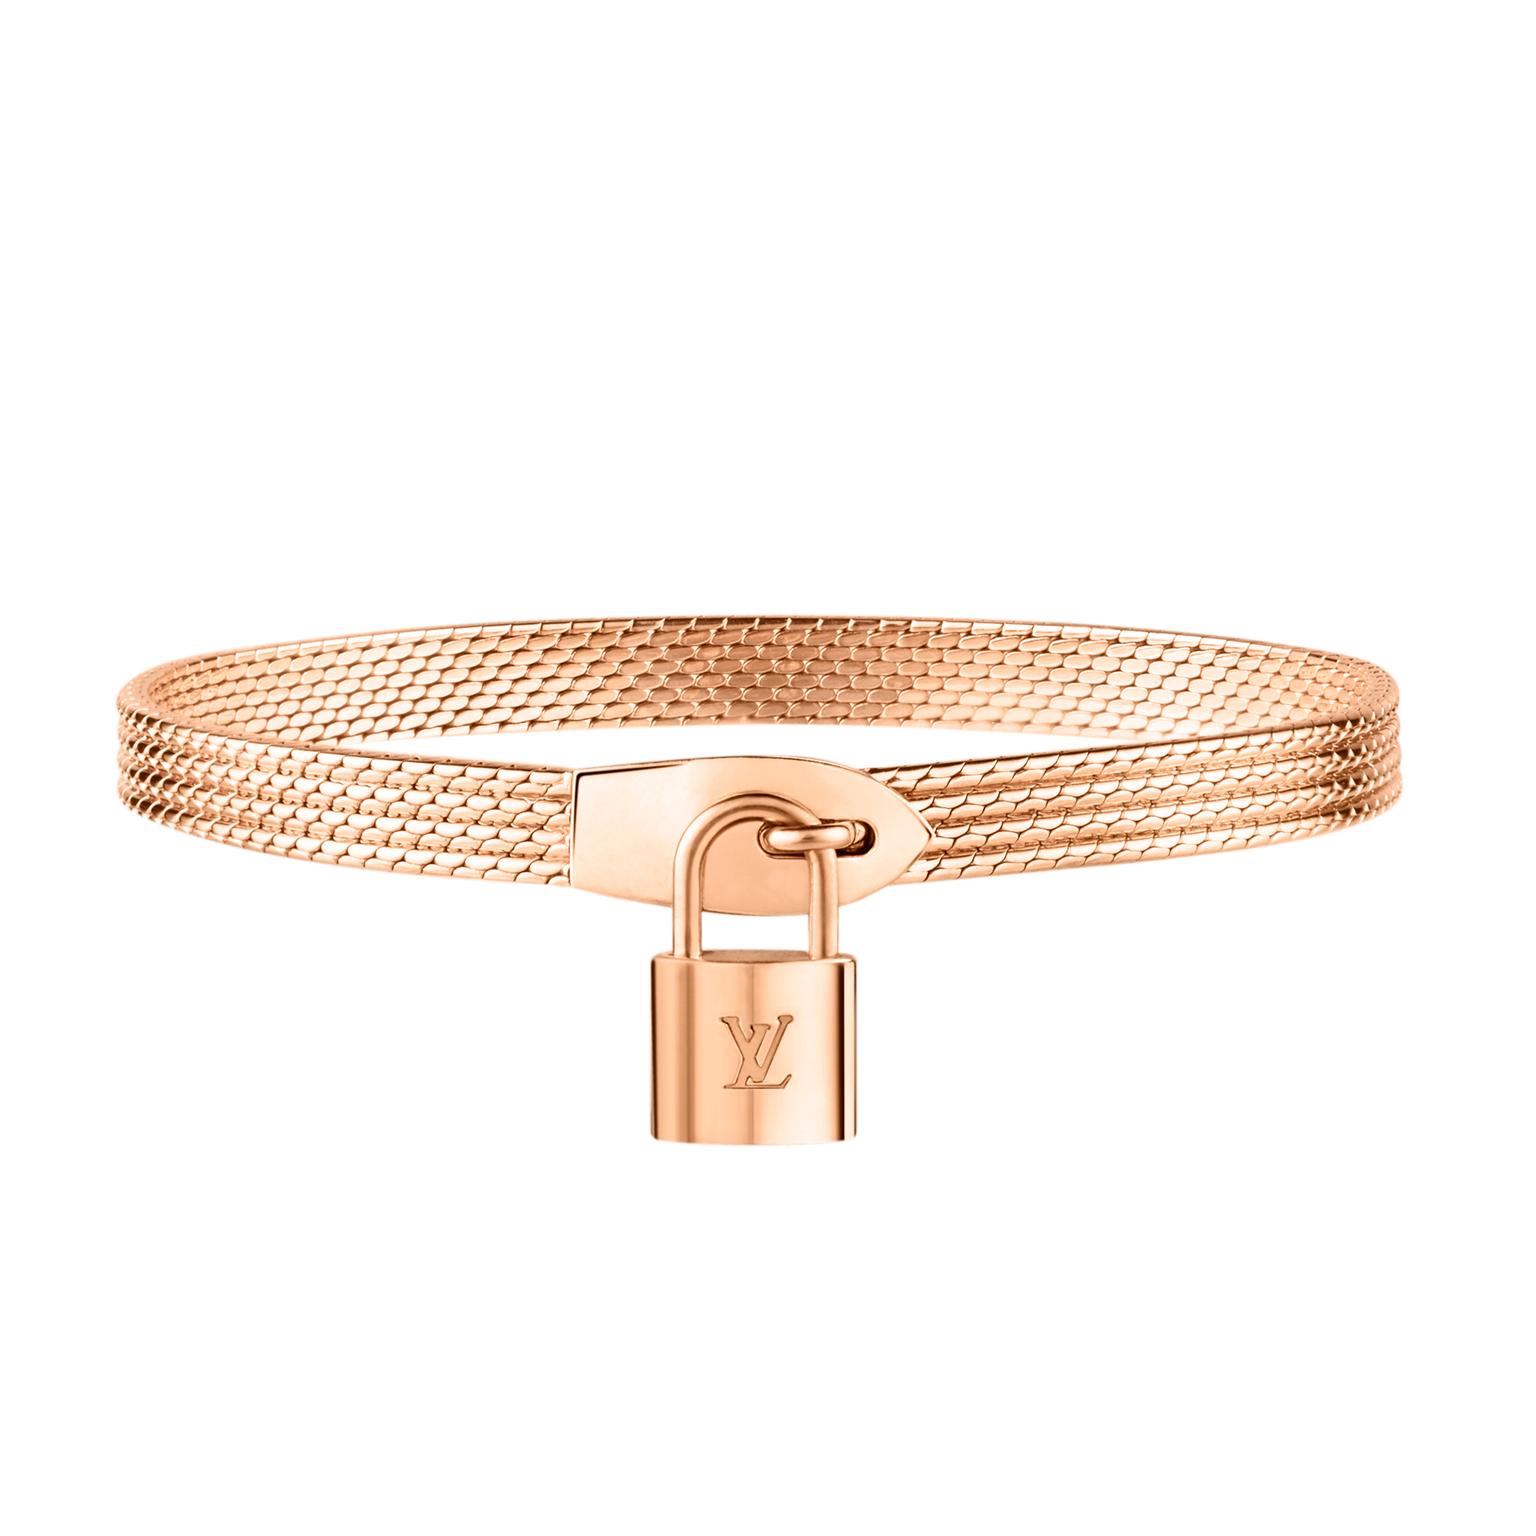 Louis Vuitton Lockit Bracelet rose gold